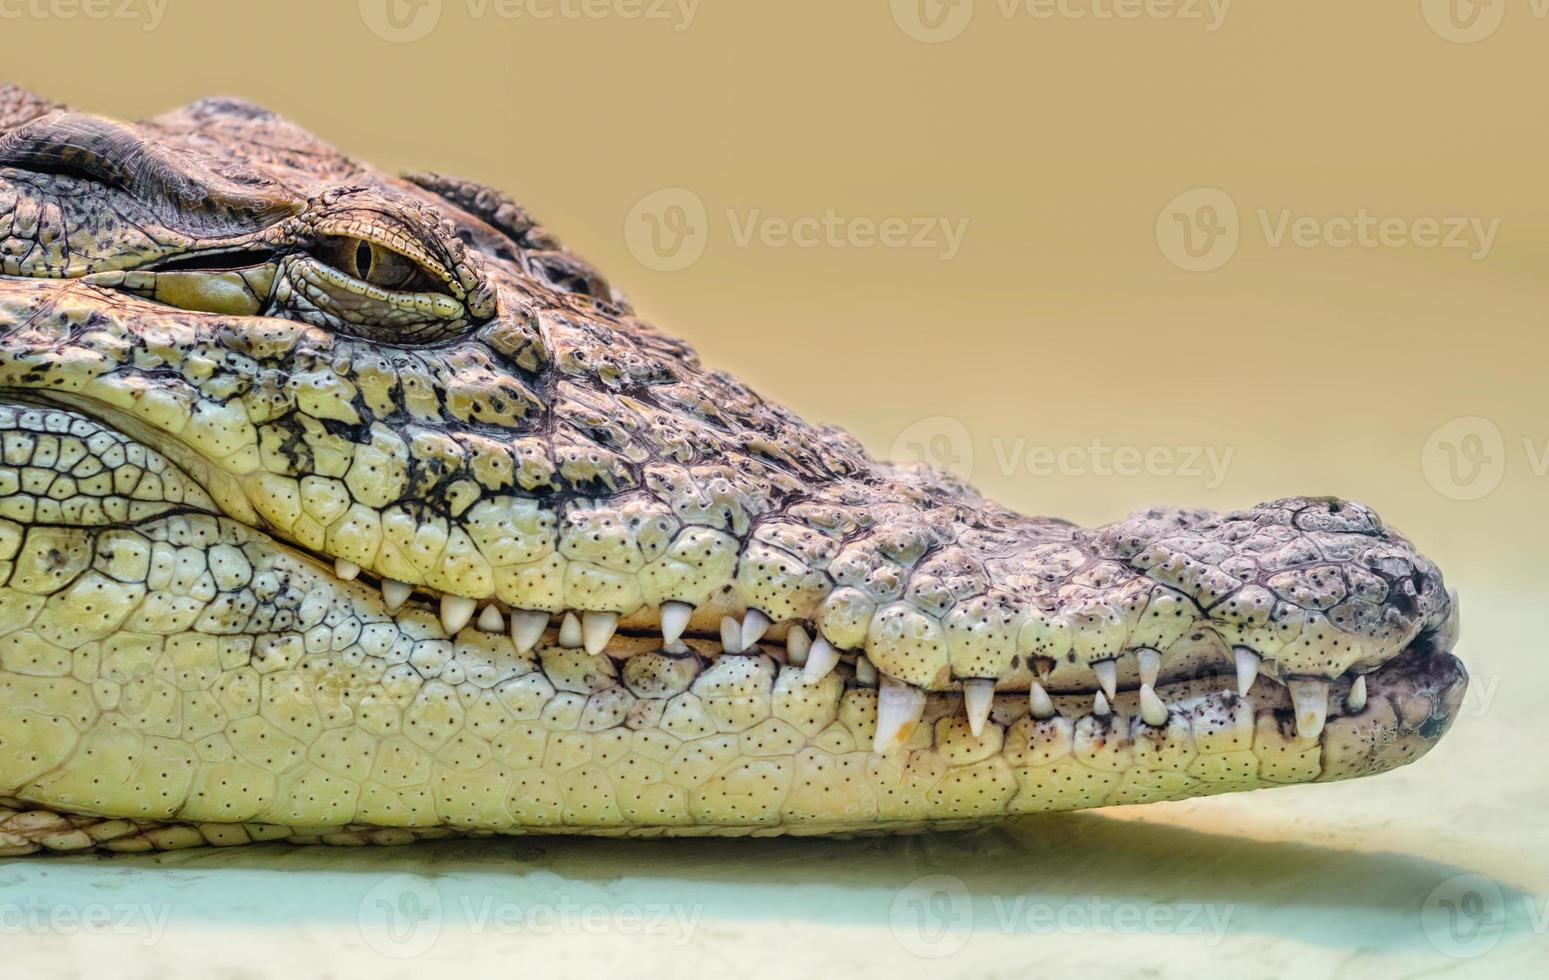 krokodilhuvud med tandig mun och gula ögon isolerade på nära håll på en gul bakgrund foto